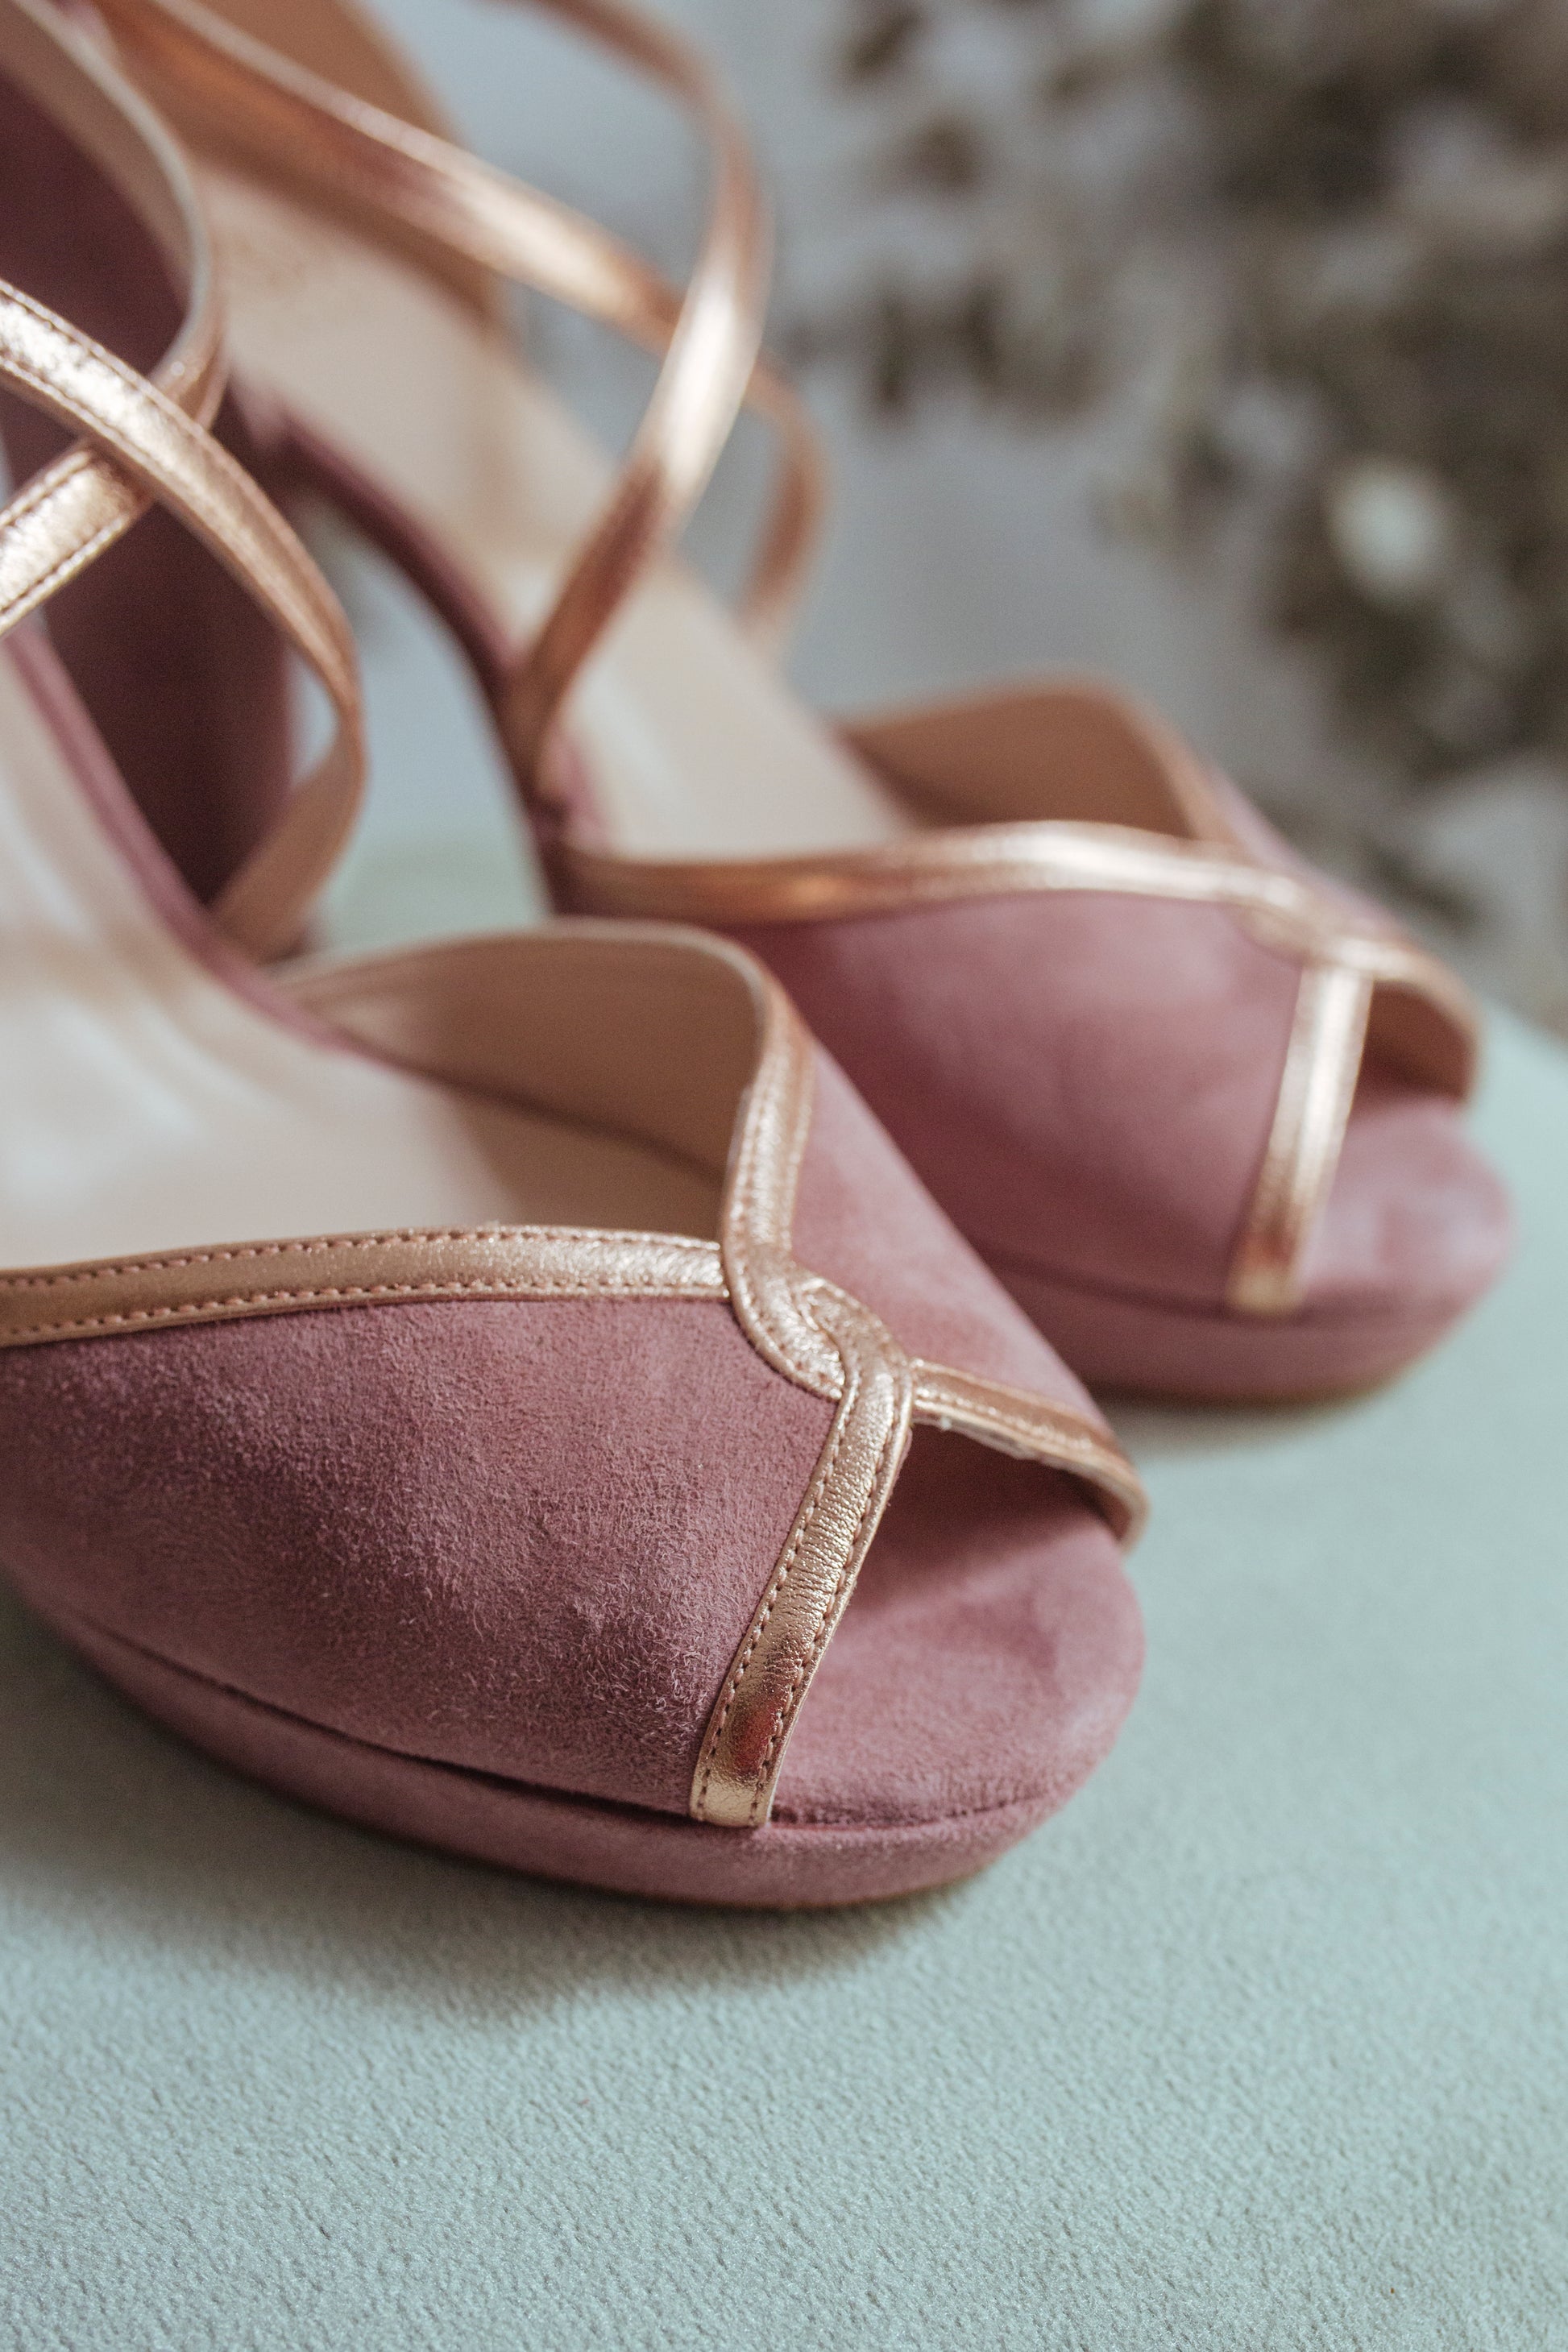 Bilma Rosado-sandalias-ante, bilma, liso, sandalia, tacon de 10, zapatos de color rosa-Loovshoes